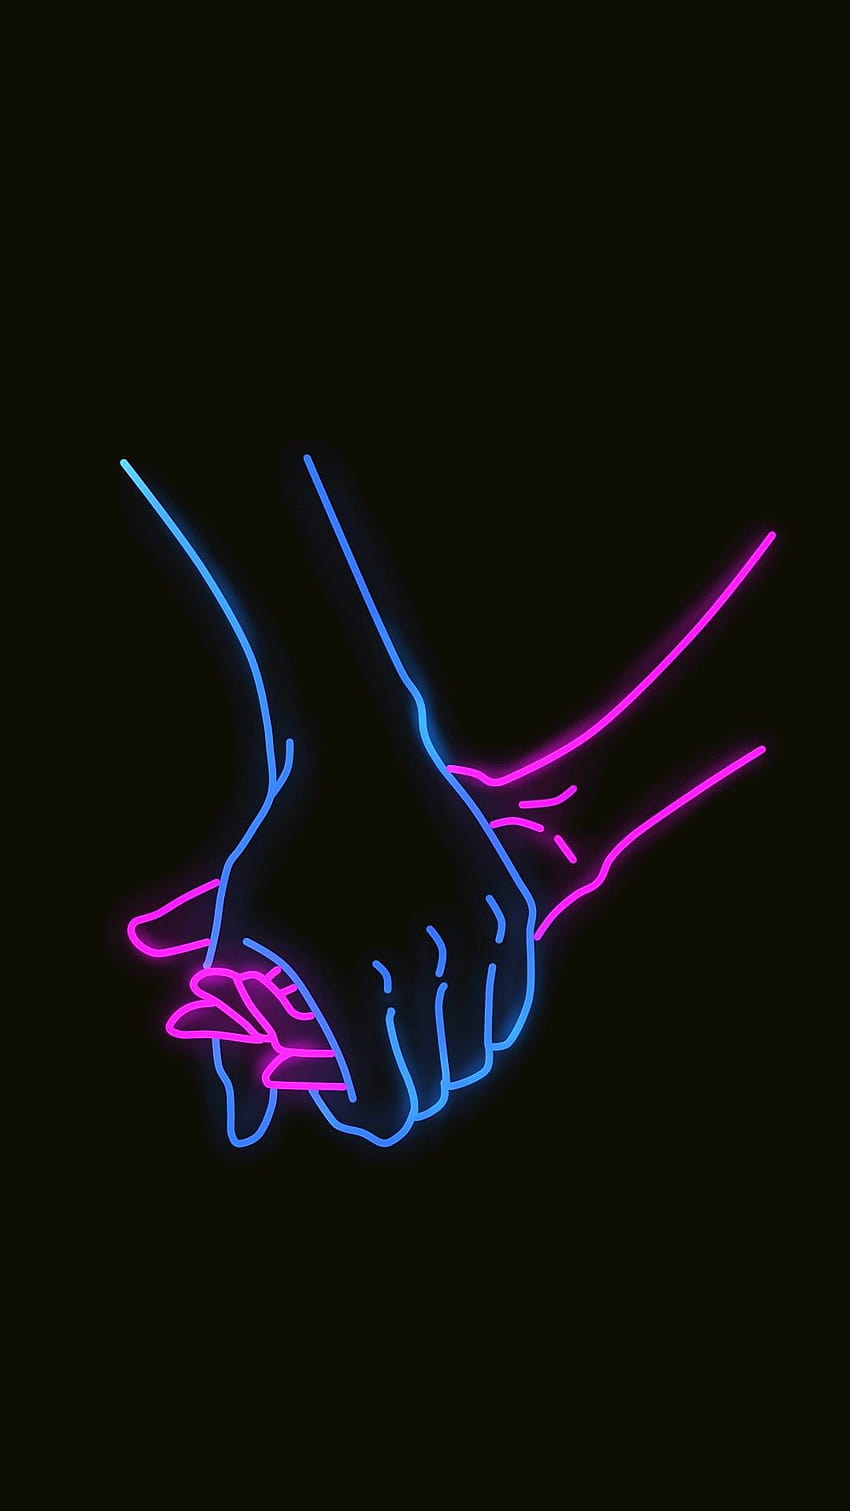 Tomados de la mano Neon Black Love Android fondo de pantalla del teléfono